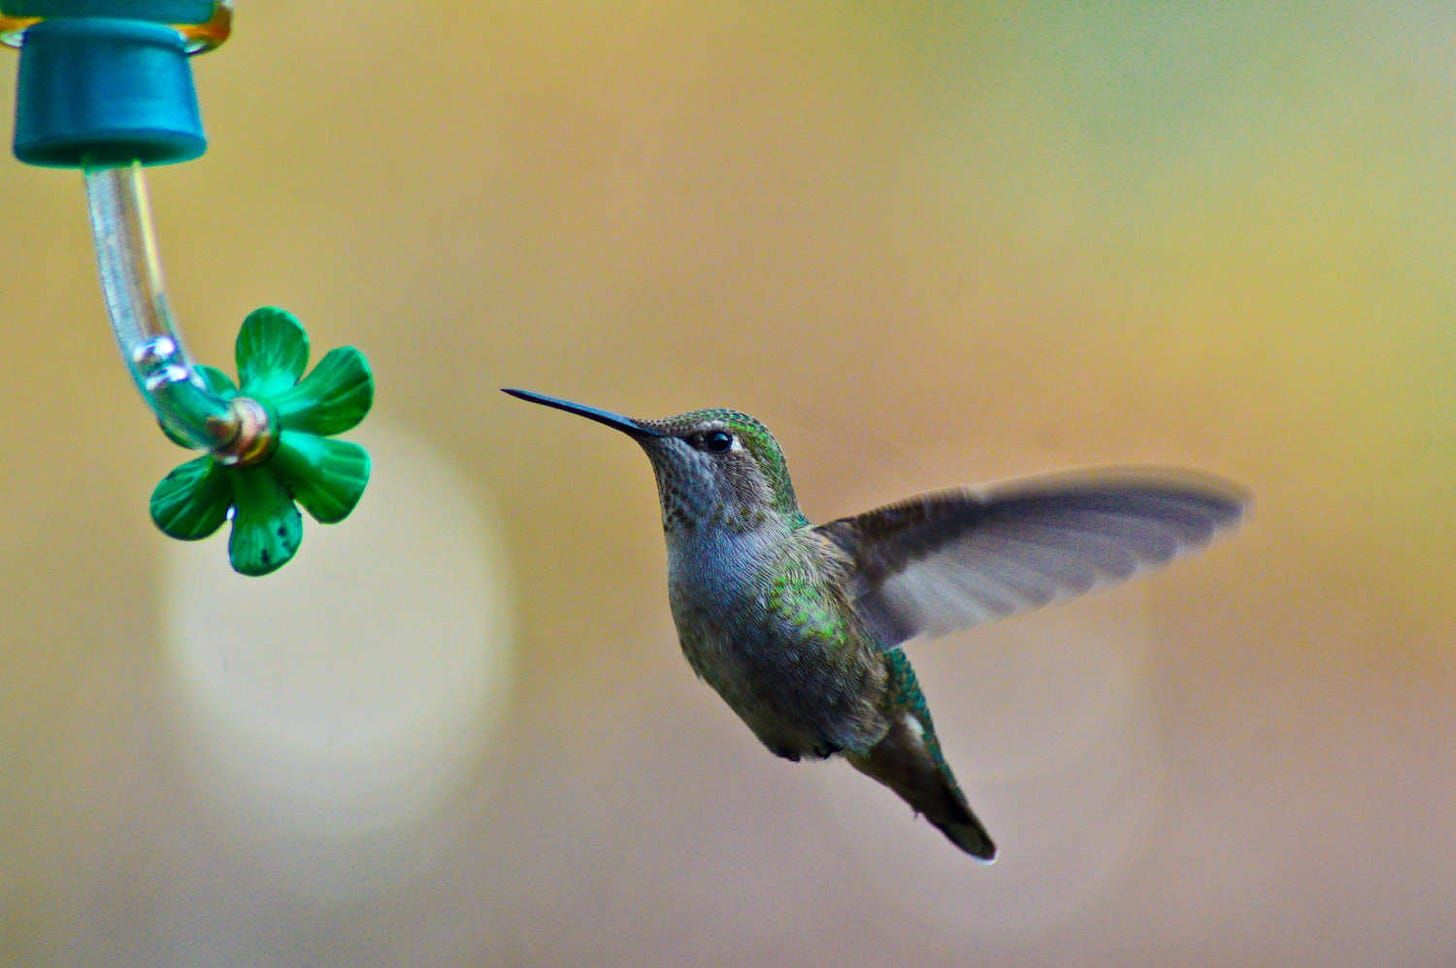 un colibrí de color verde y azul bate sus alas mientras se acerca a un comedero